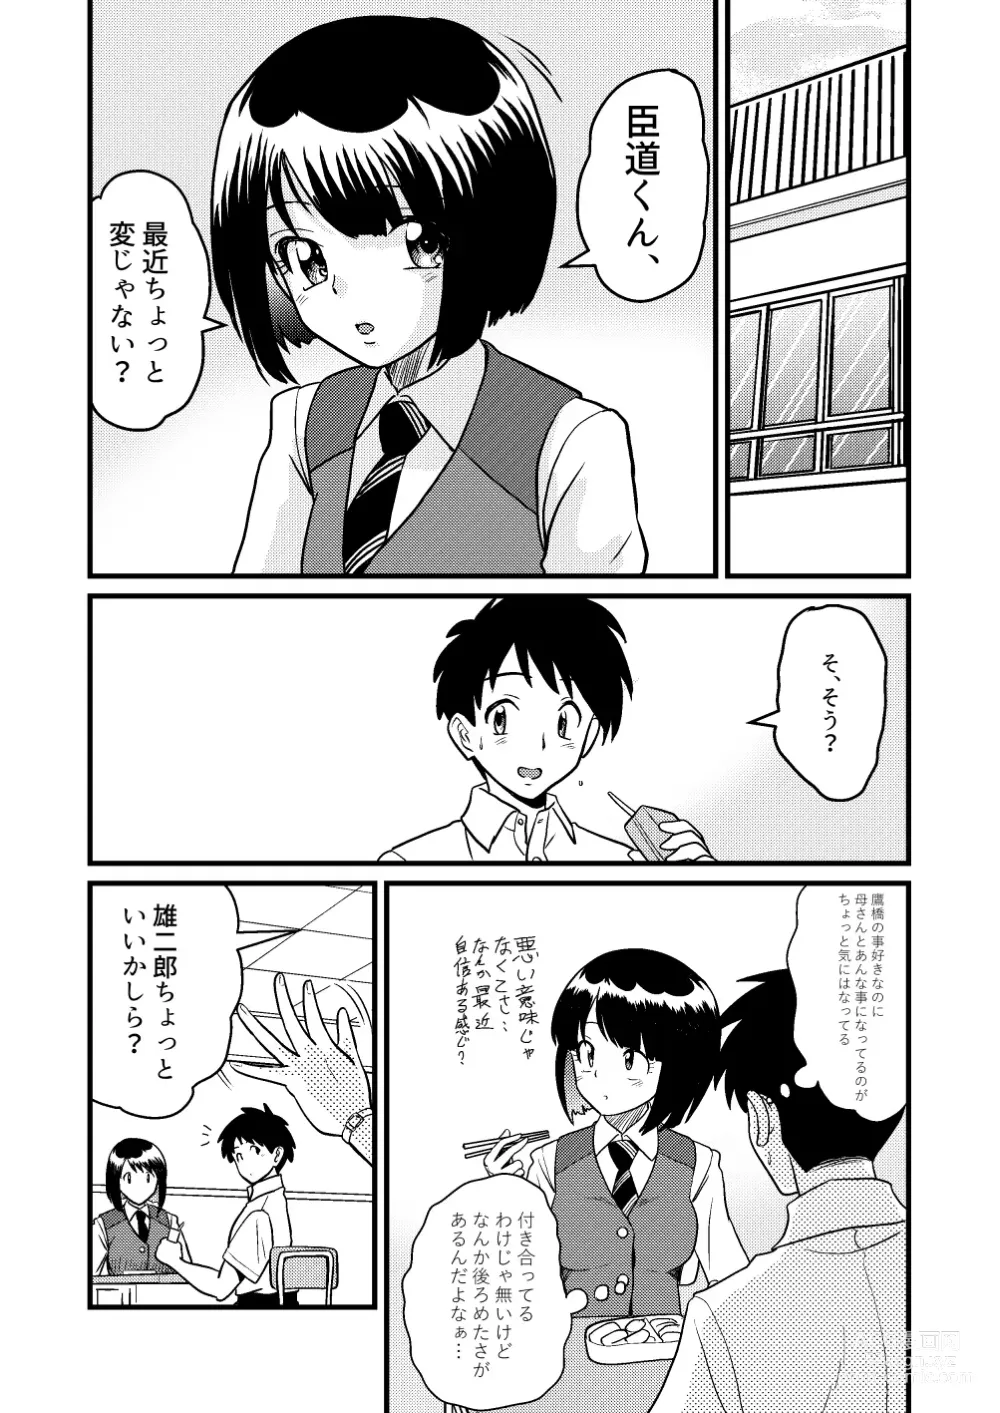 Page 12 of doujinshi Shin Kazoku 2 Ima wa Sensei nante Yobanaide...